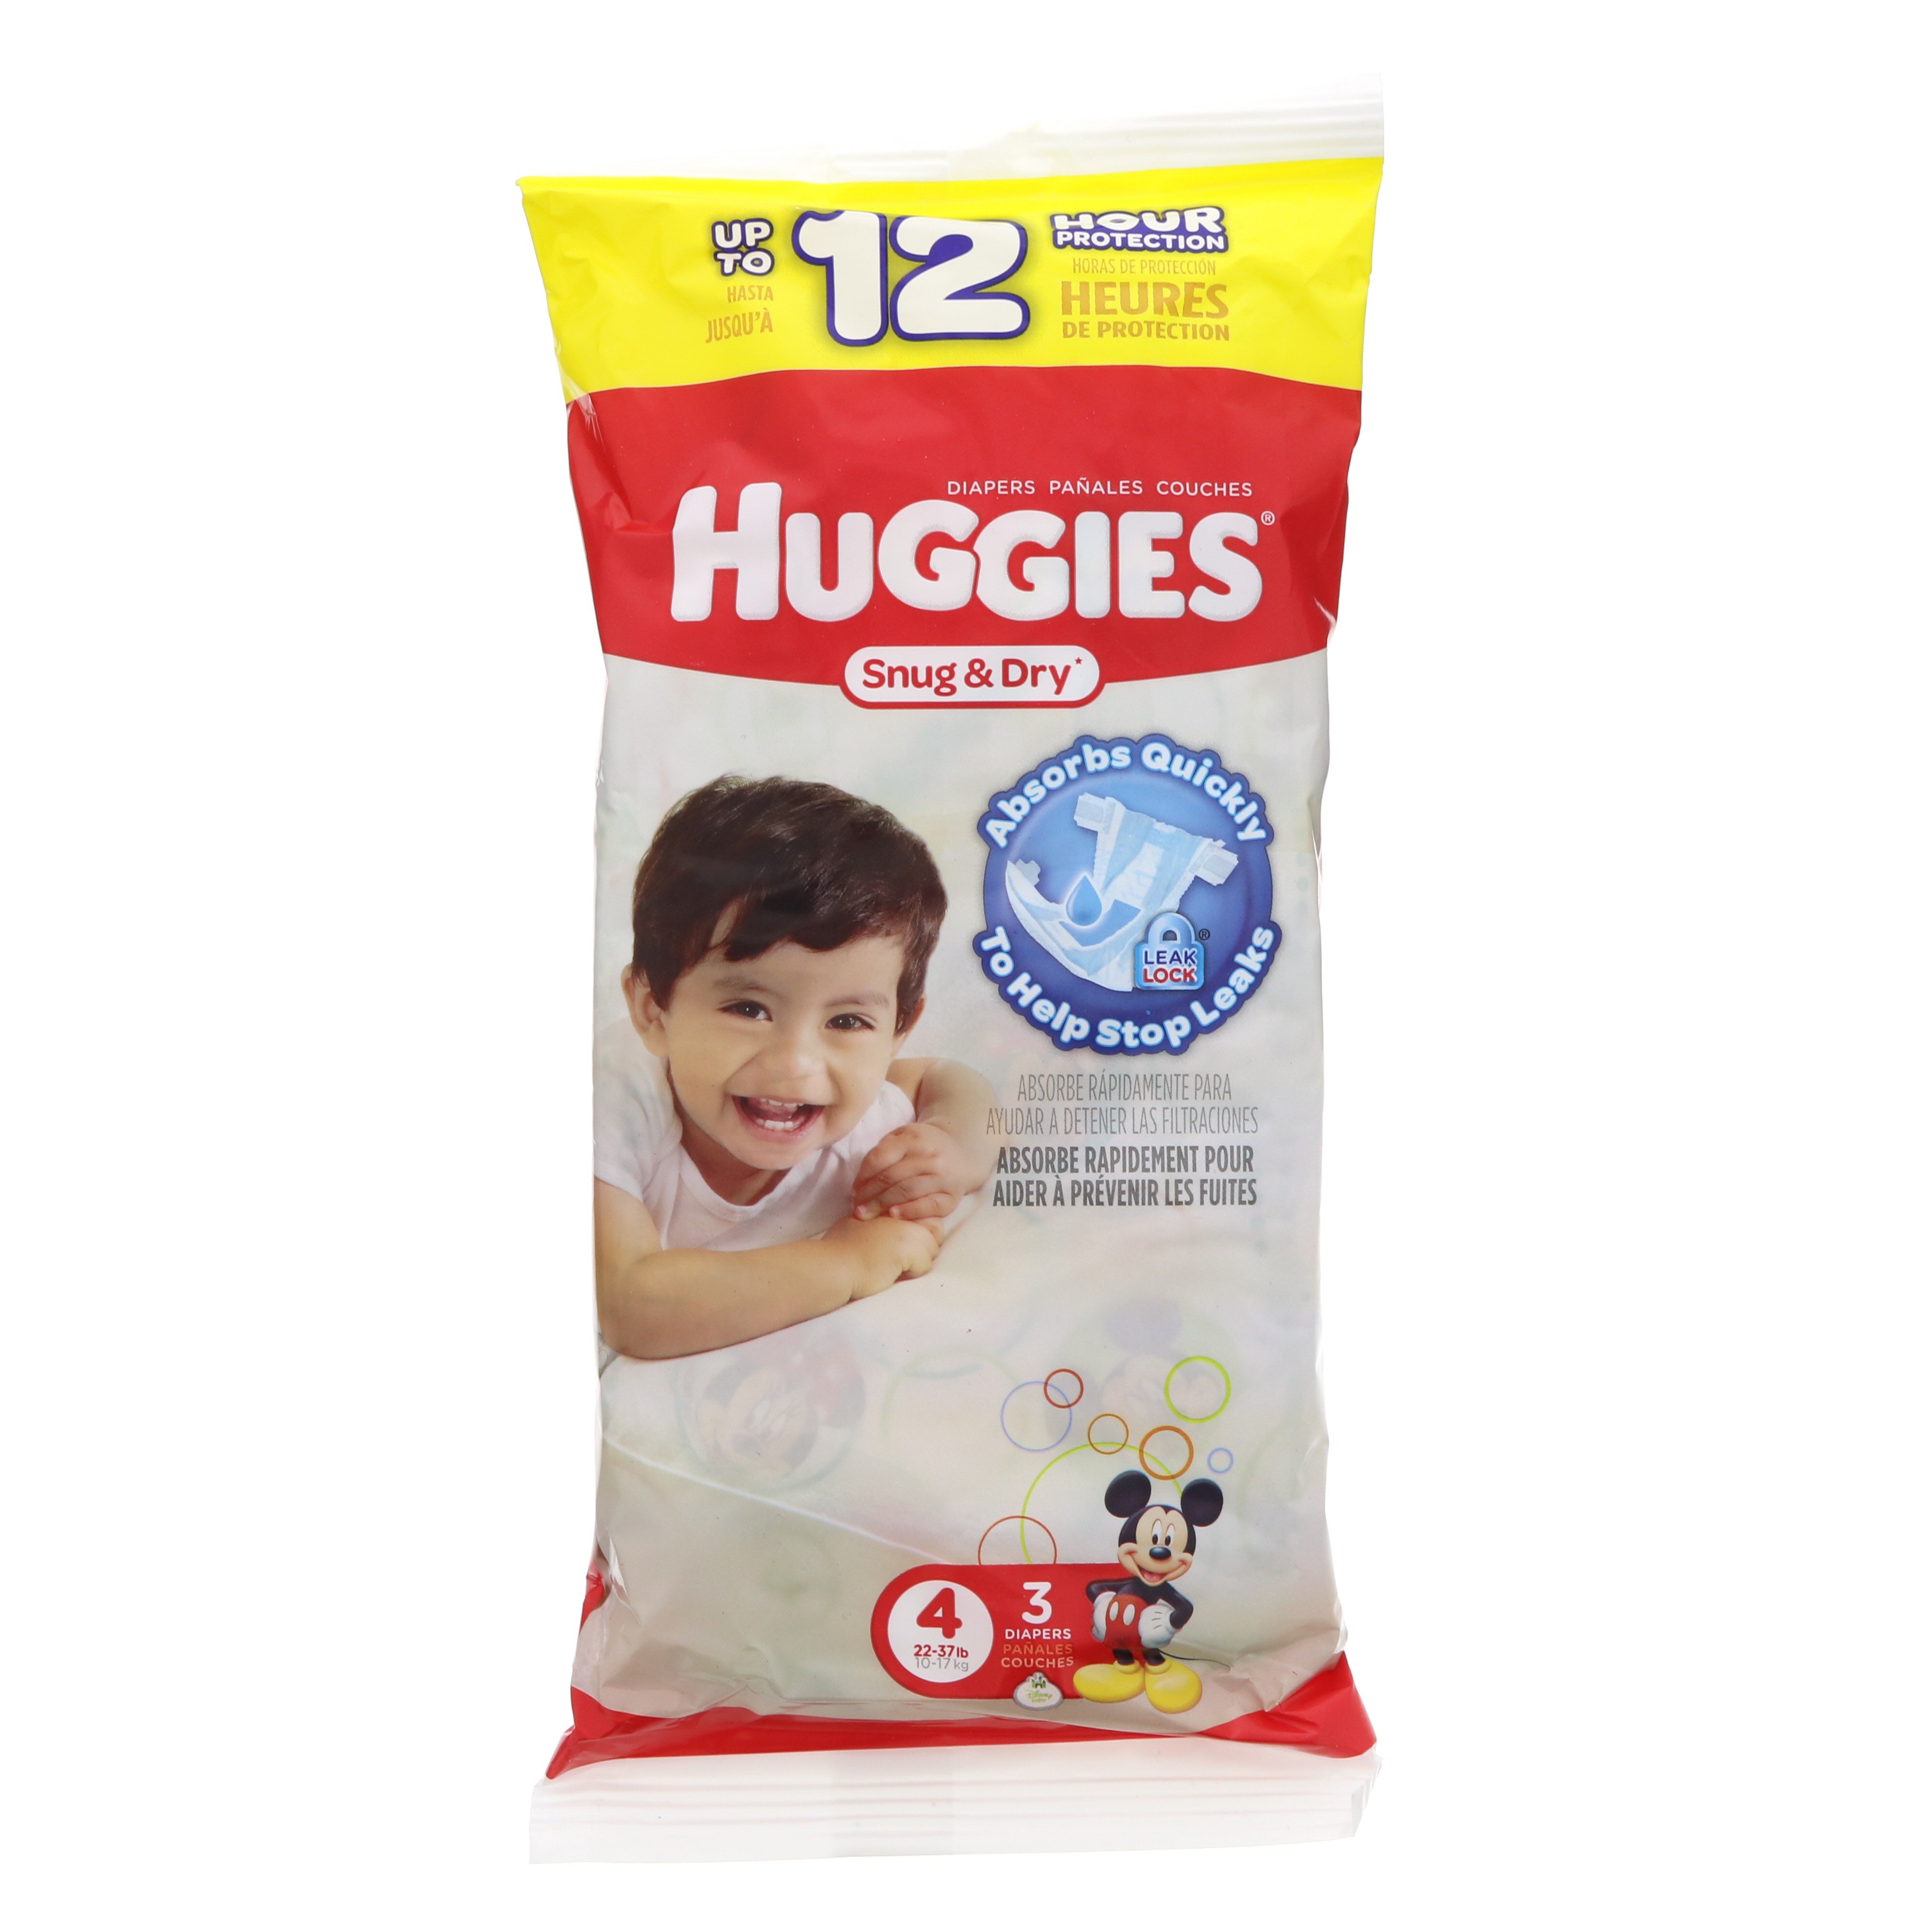 Huggies Snug & Dry Big Pack Diapers - Size 3 by Huggies at Fleet Farm